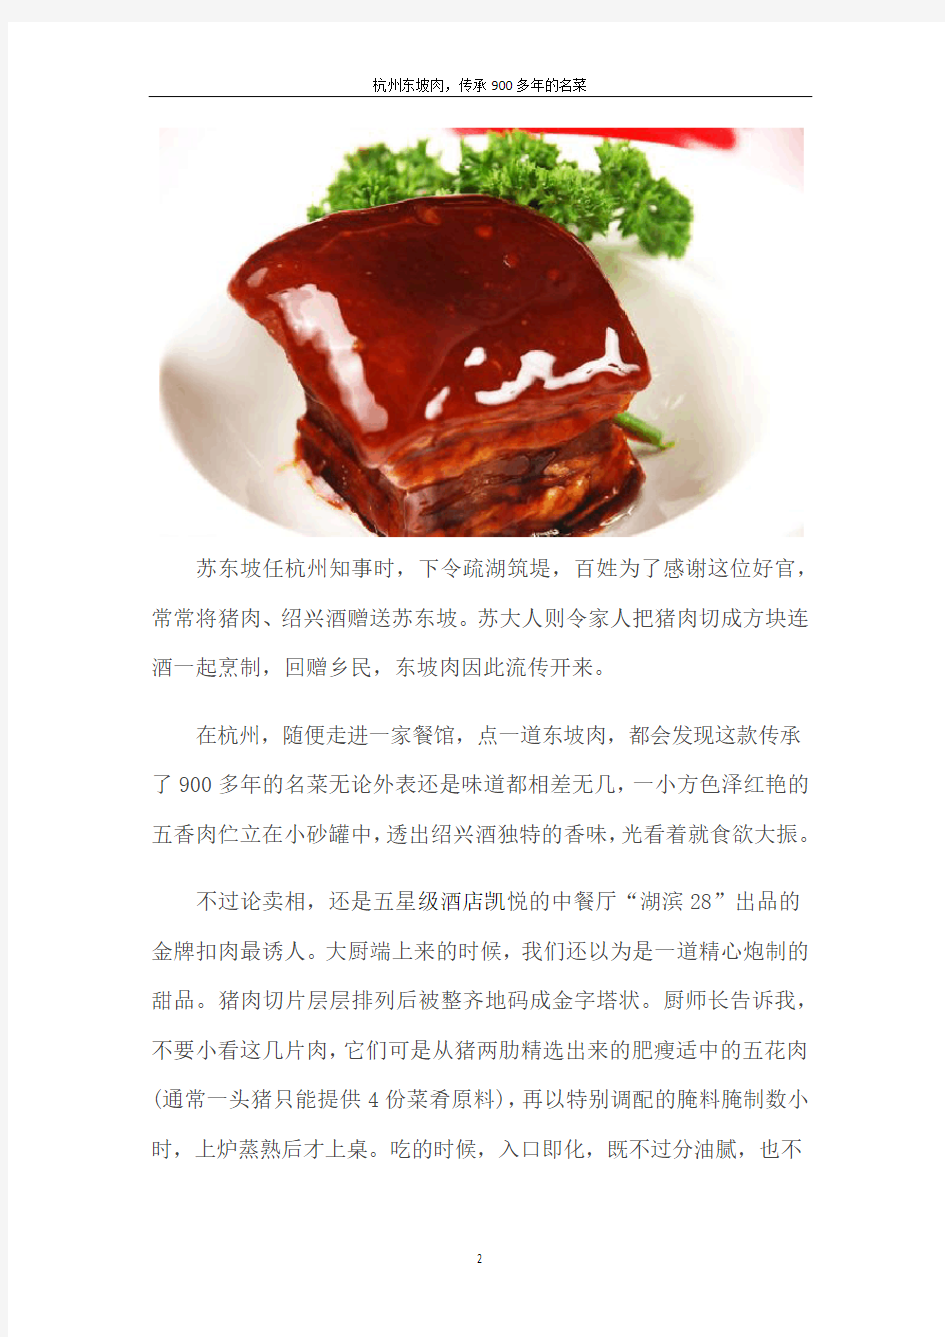 杭州东坡肉,传承900多年的名菜